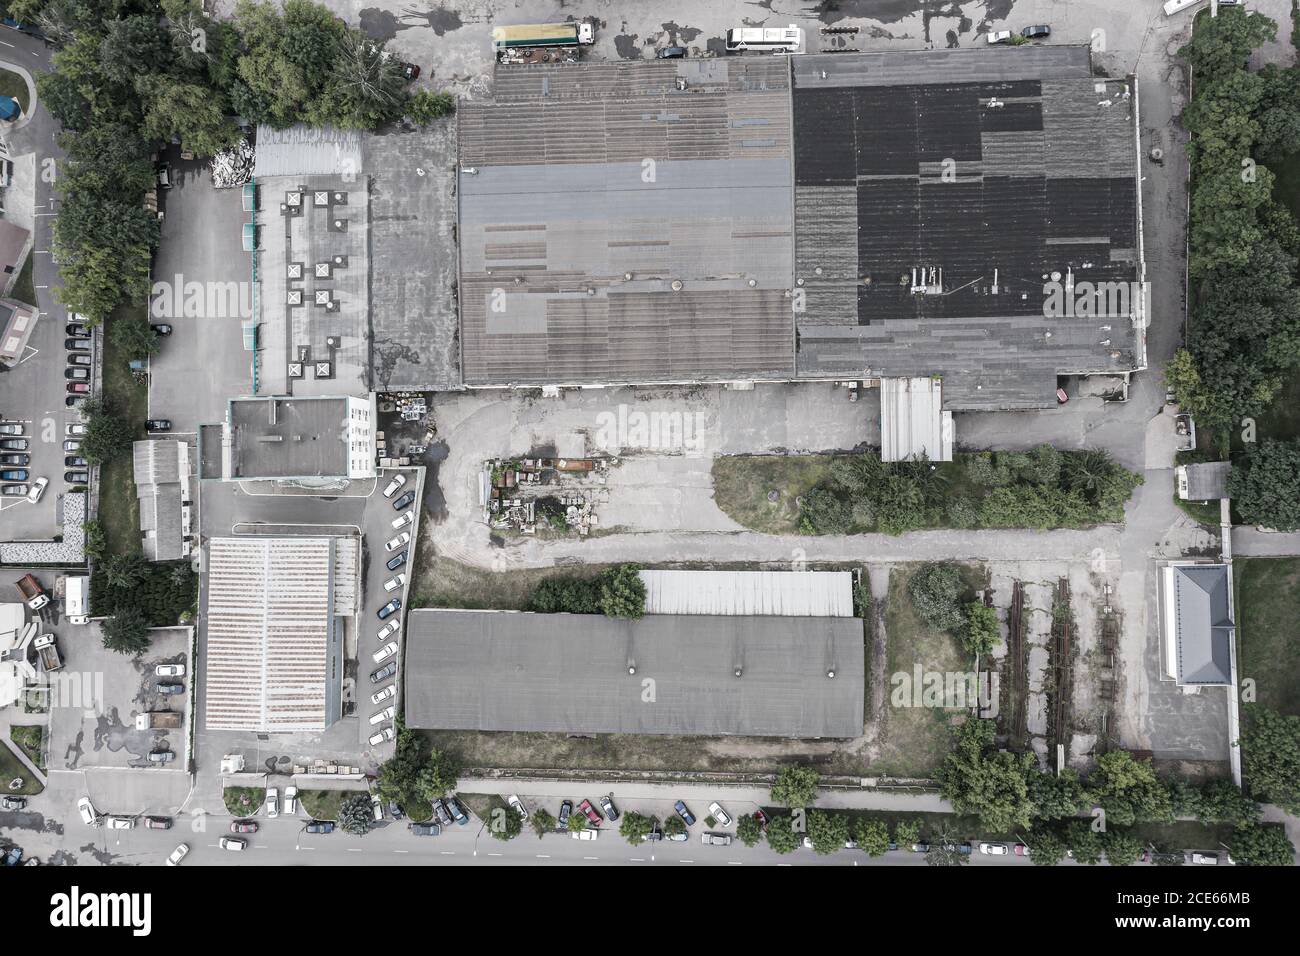 vista aérea del distrito industrial urbano con almacenes y edificios desde arriba Foto de stock